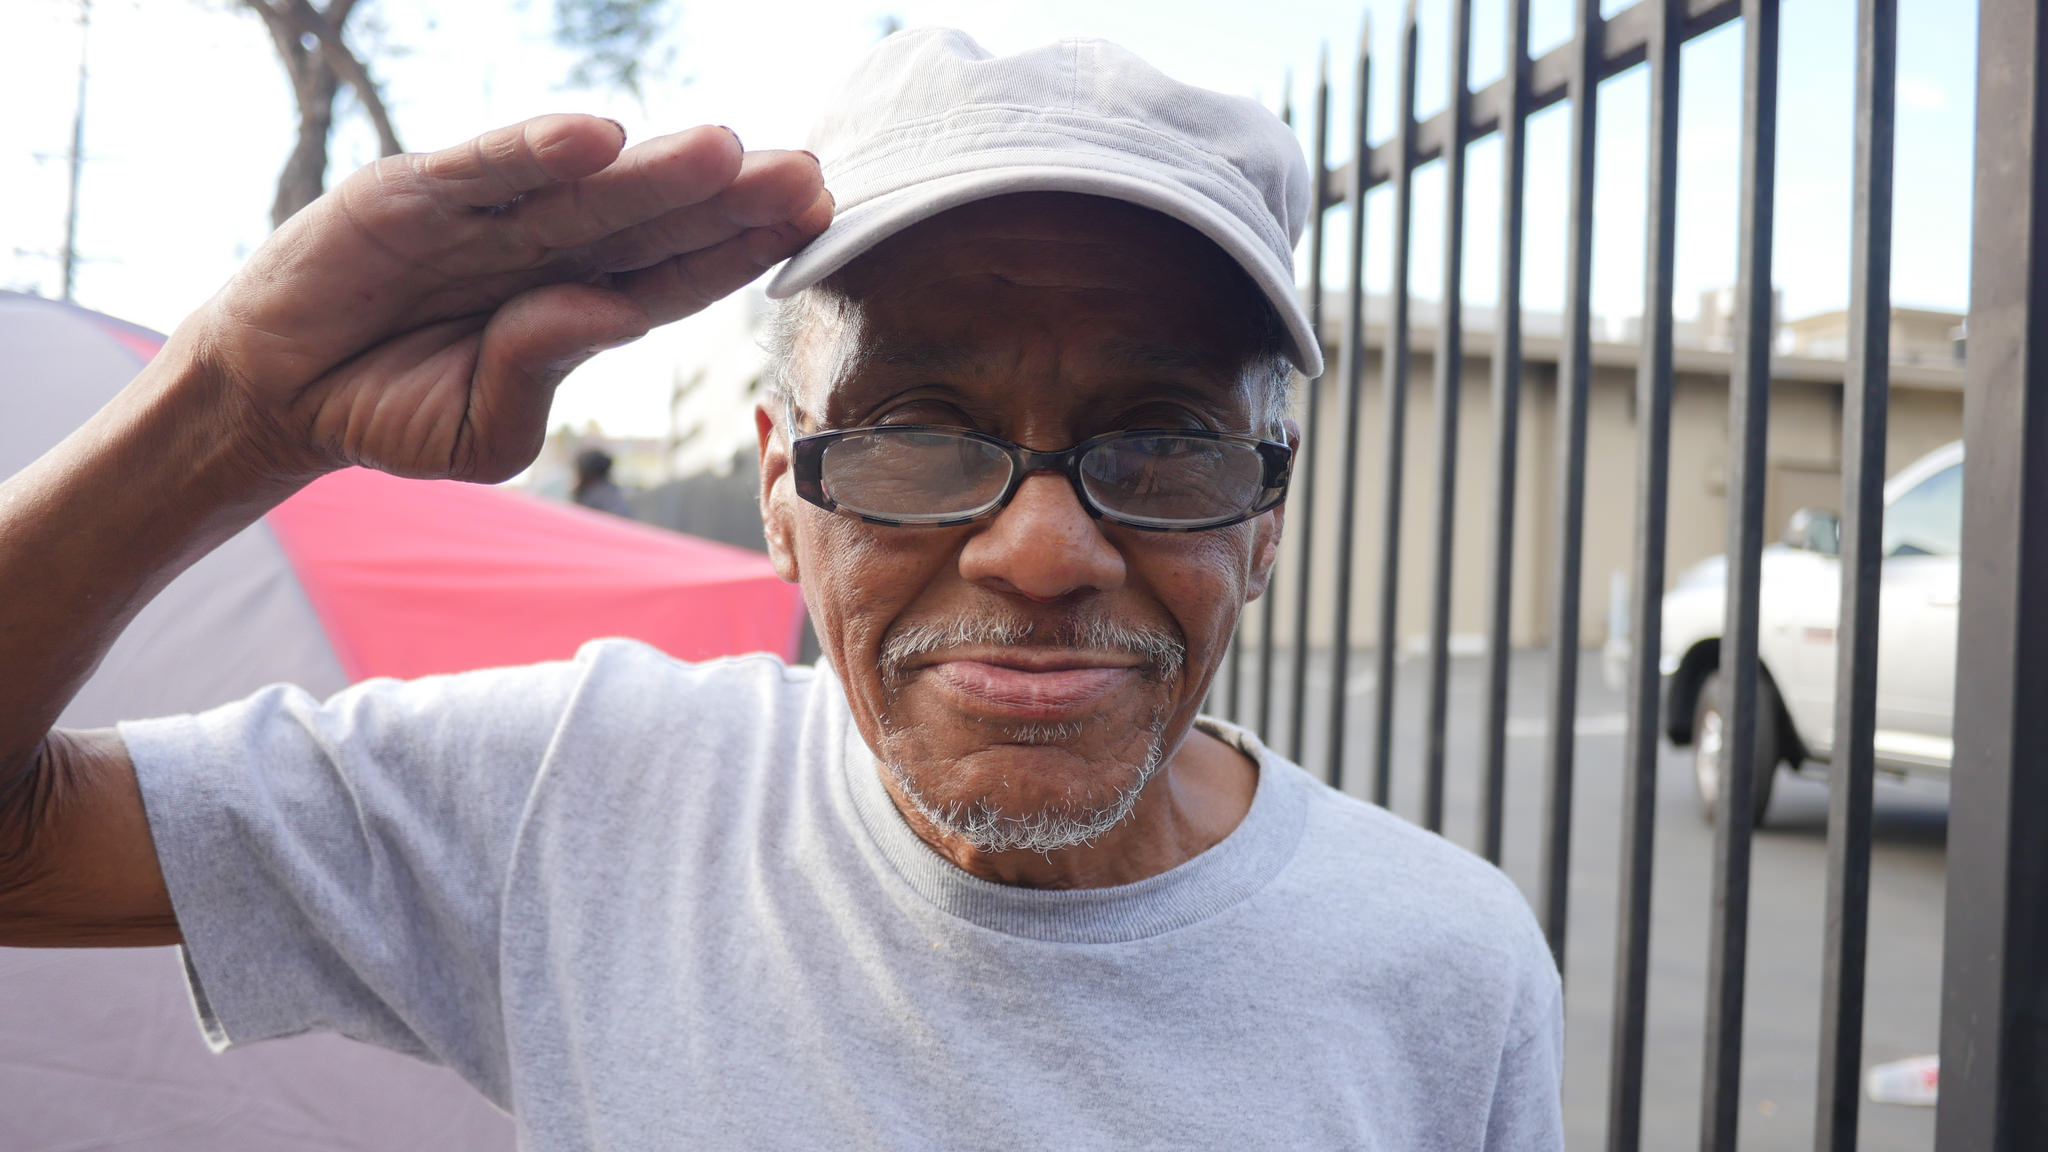 Leonardo Homeless Vietnam Veteran in Los Angeles